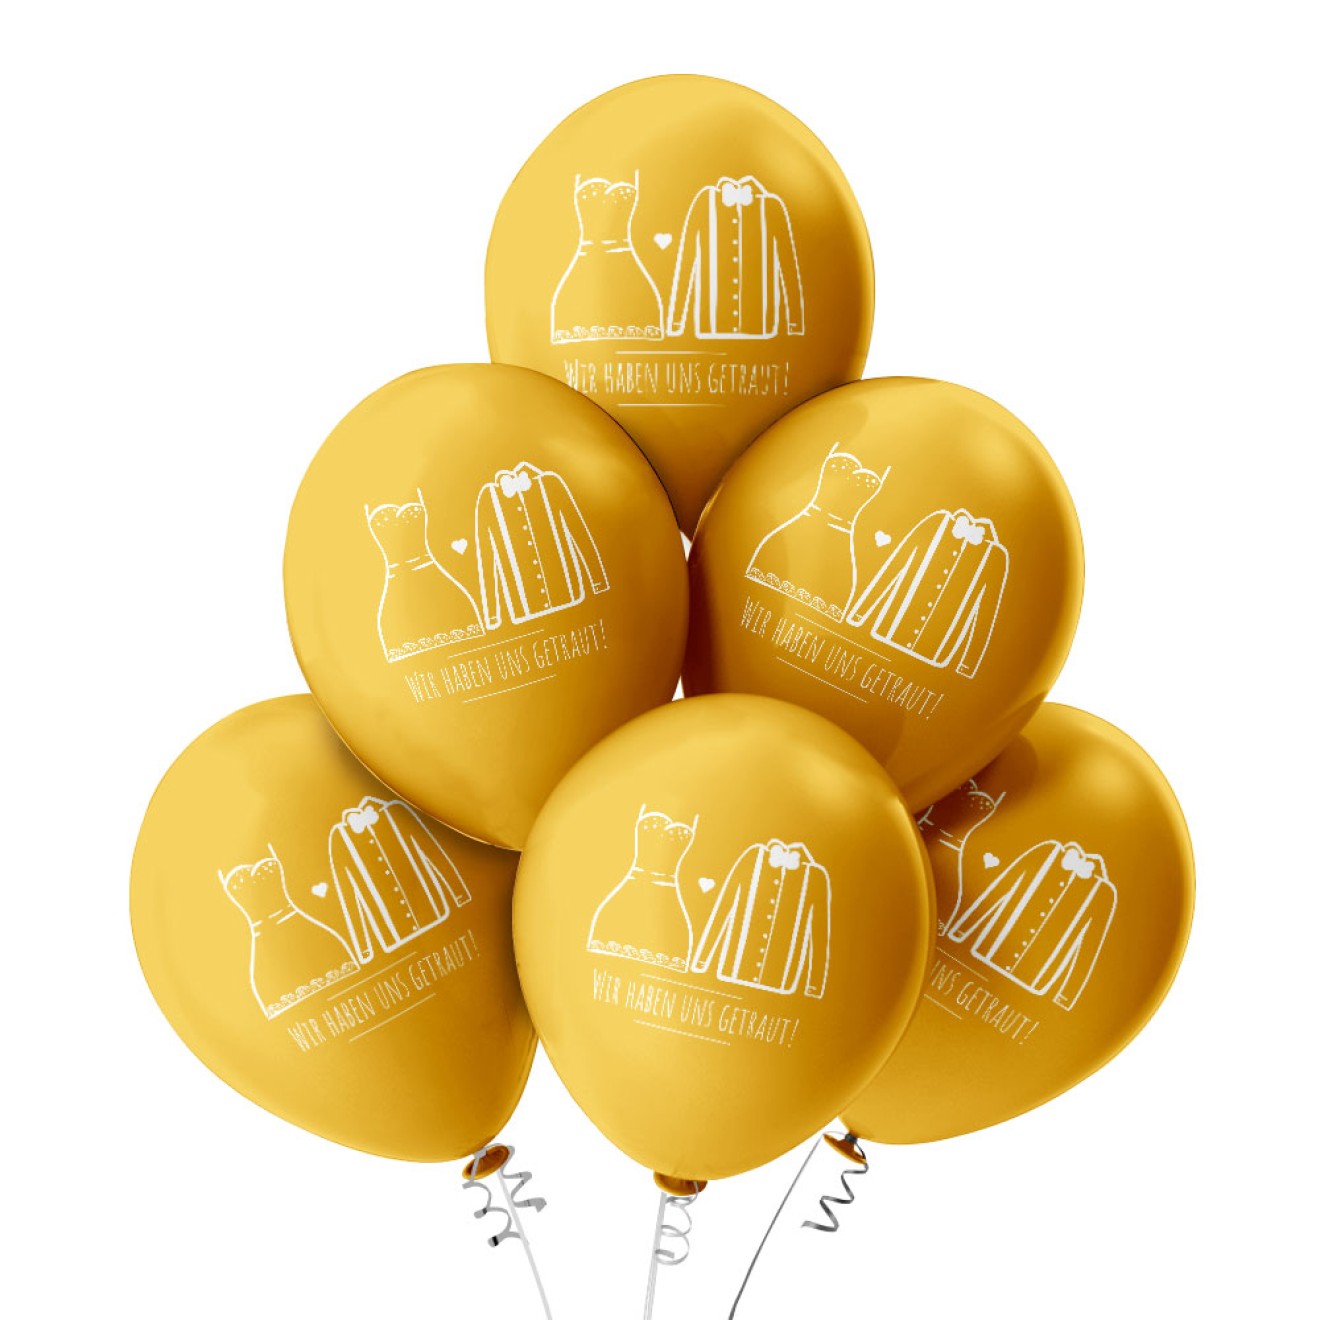 6 Luftballons Wir haben uns getraut - Gold